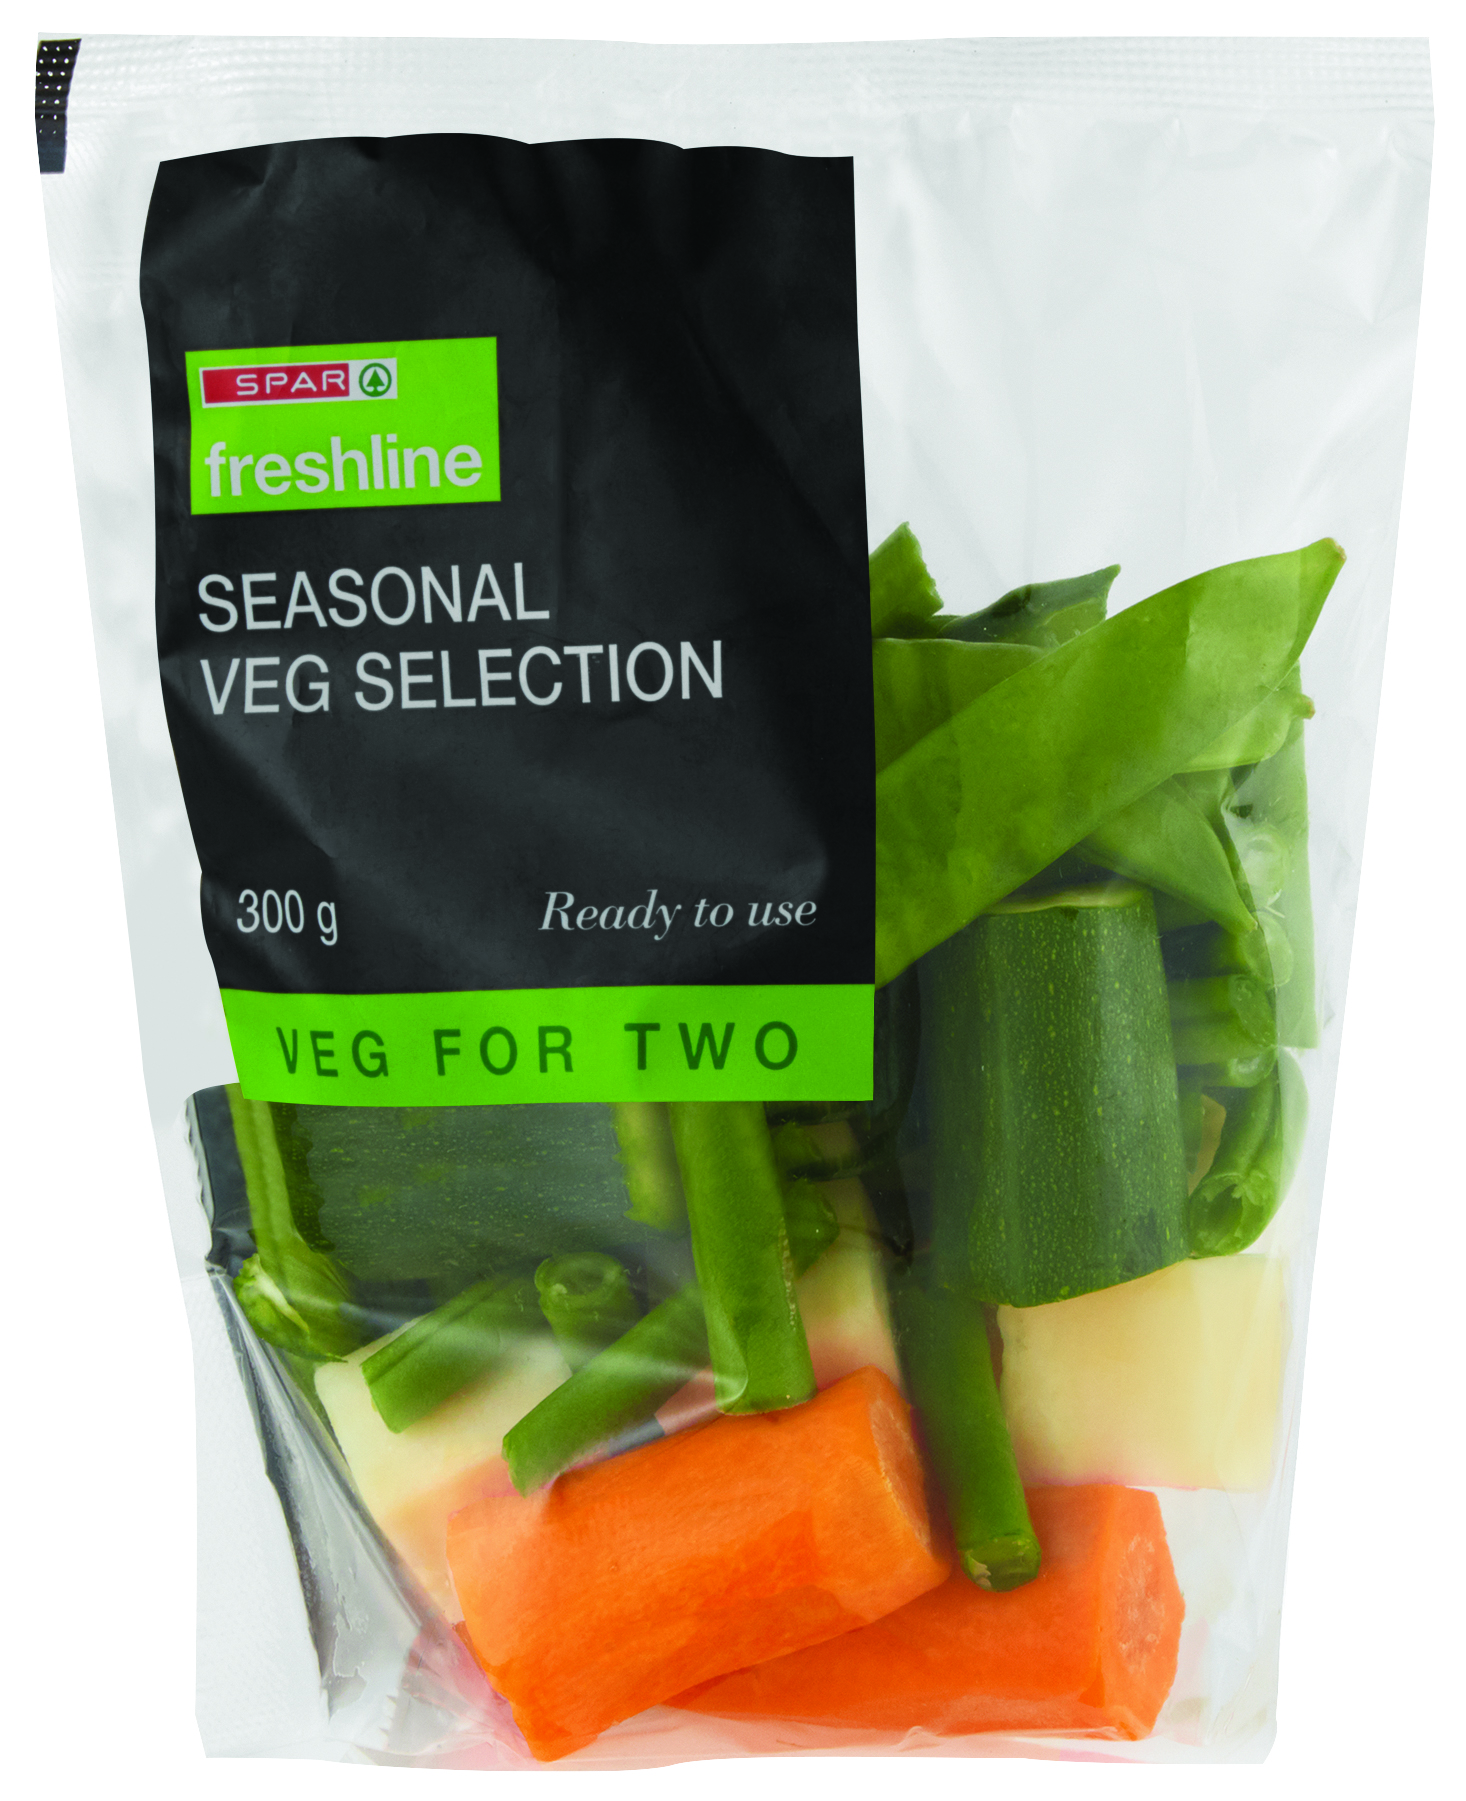 freshline veg for 2 seasonal veg selection